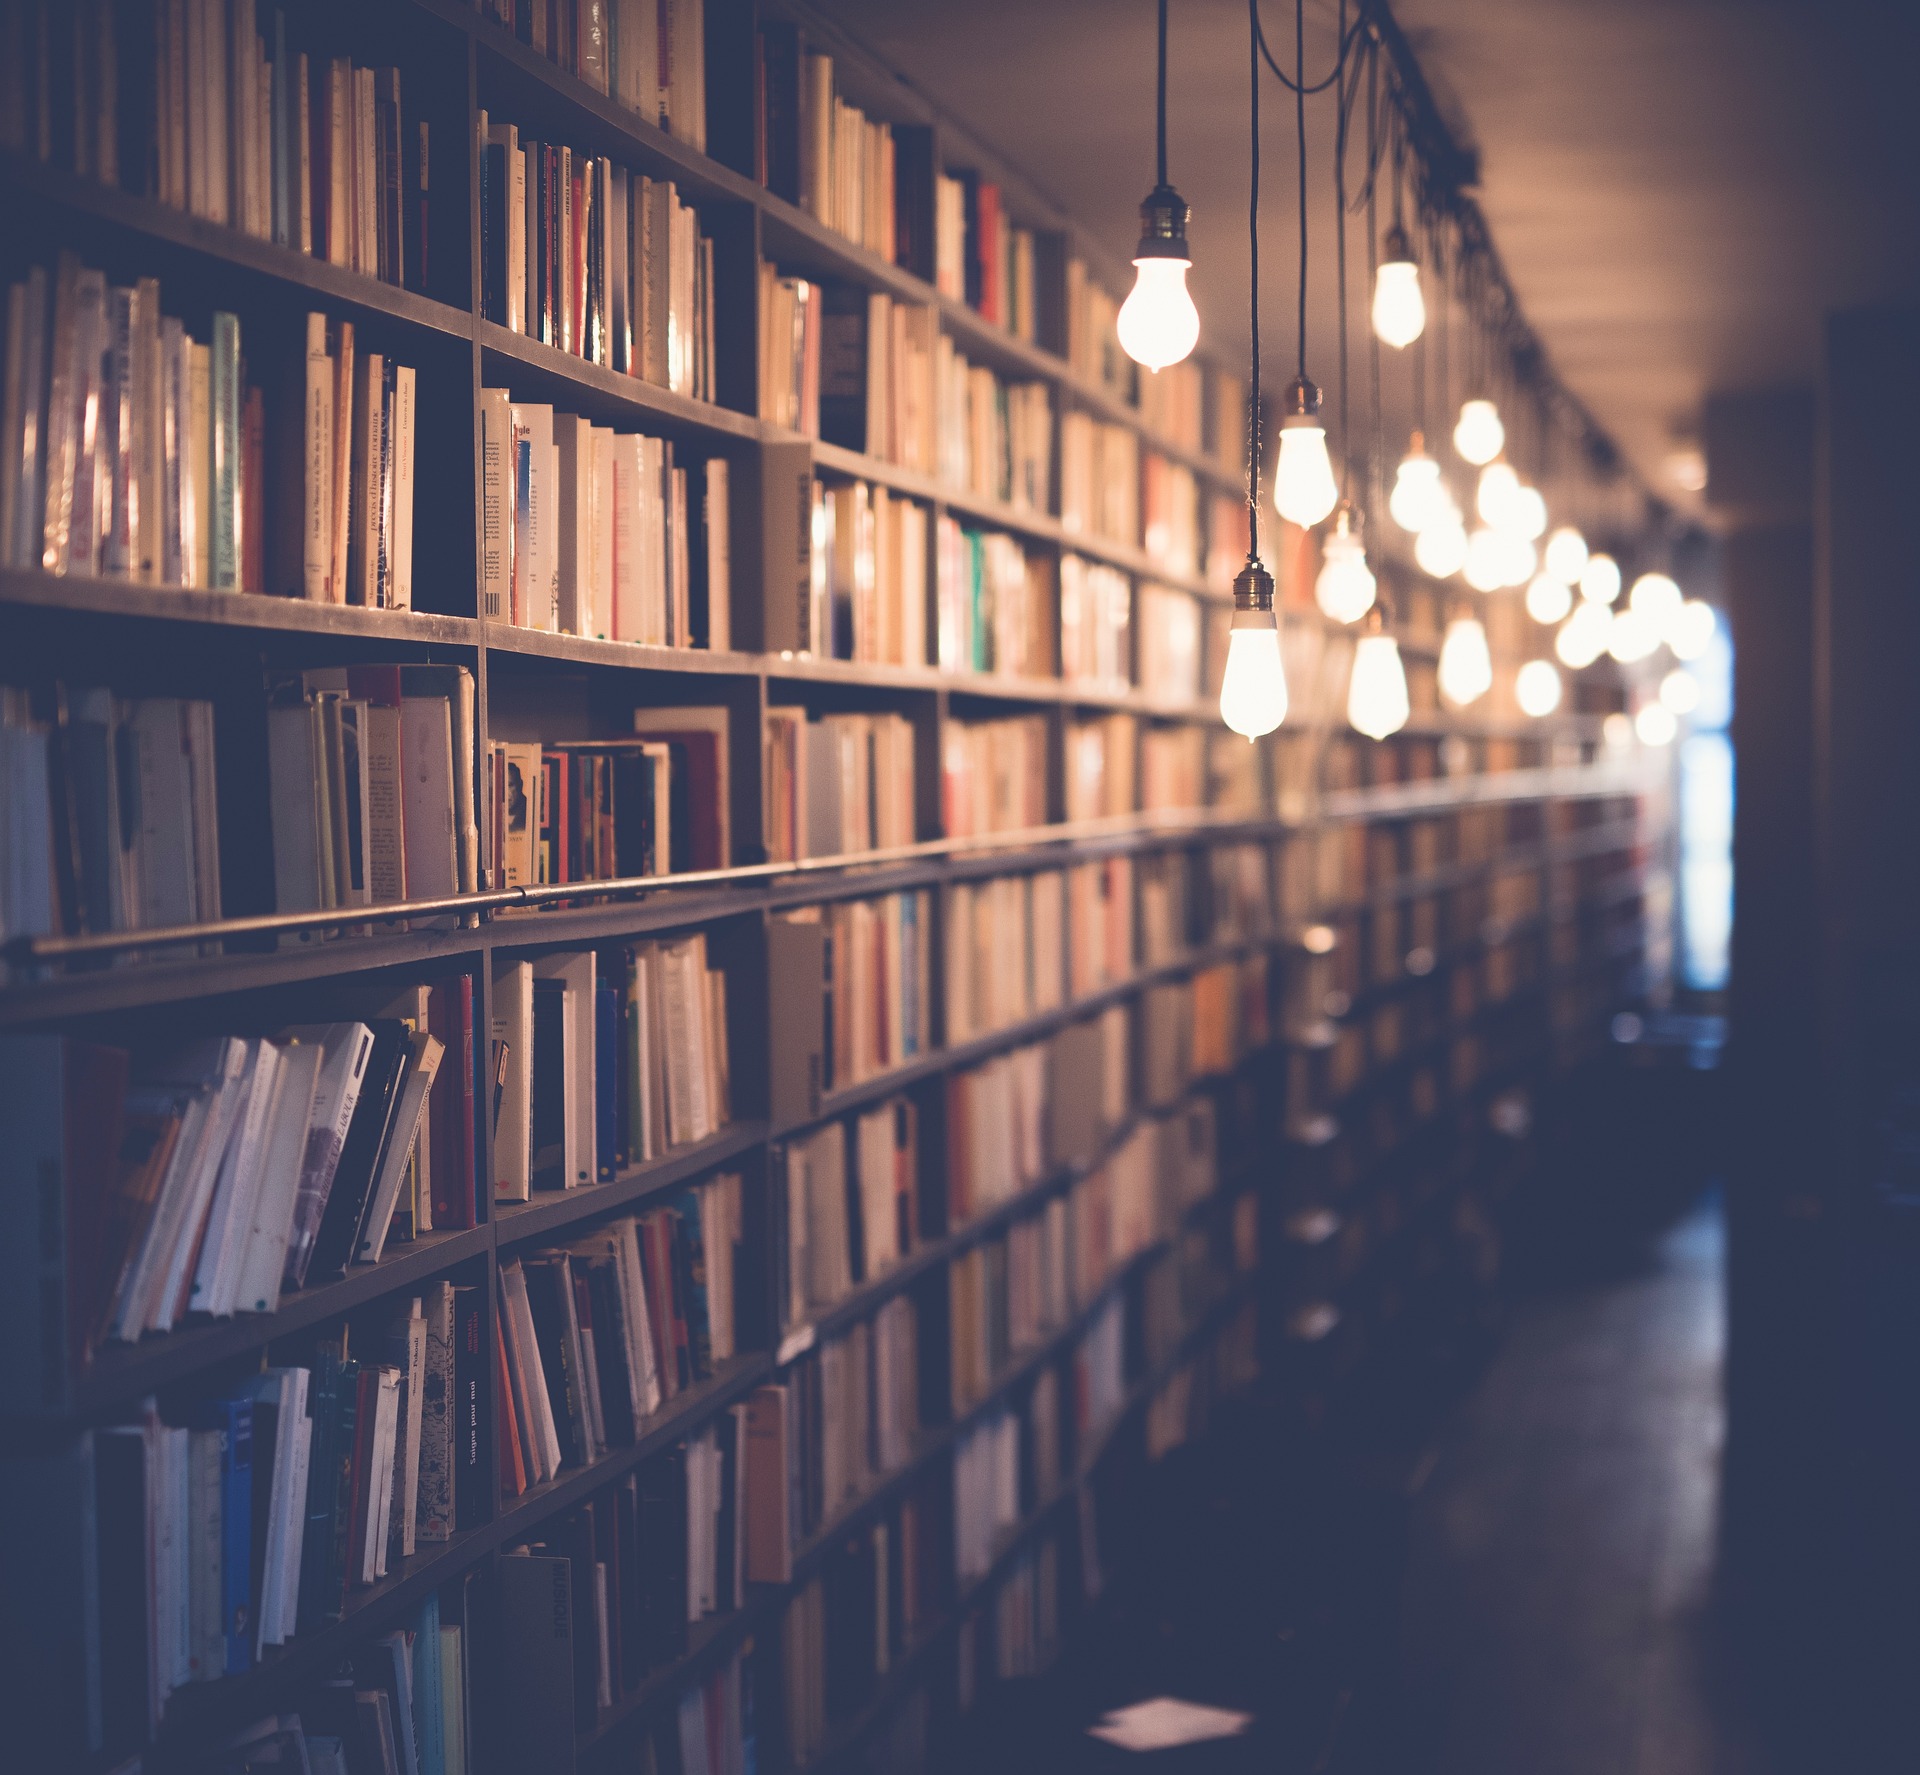 Αγγλία: Βιβλιοθήκες καταργούν πρόστιμα ελπίζοντας να τους επιστραφούν 22.000 βιβλία